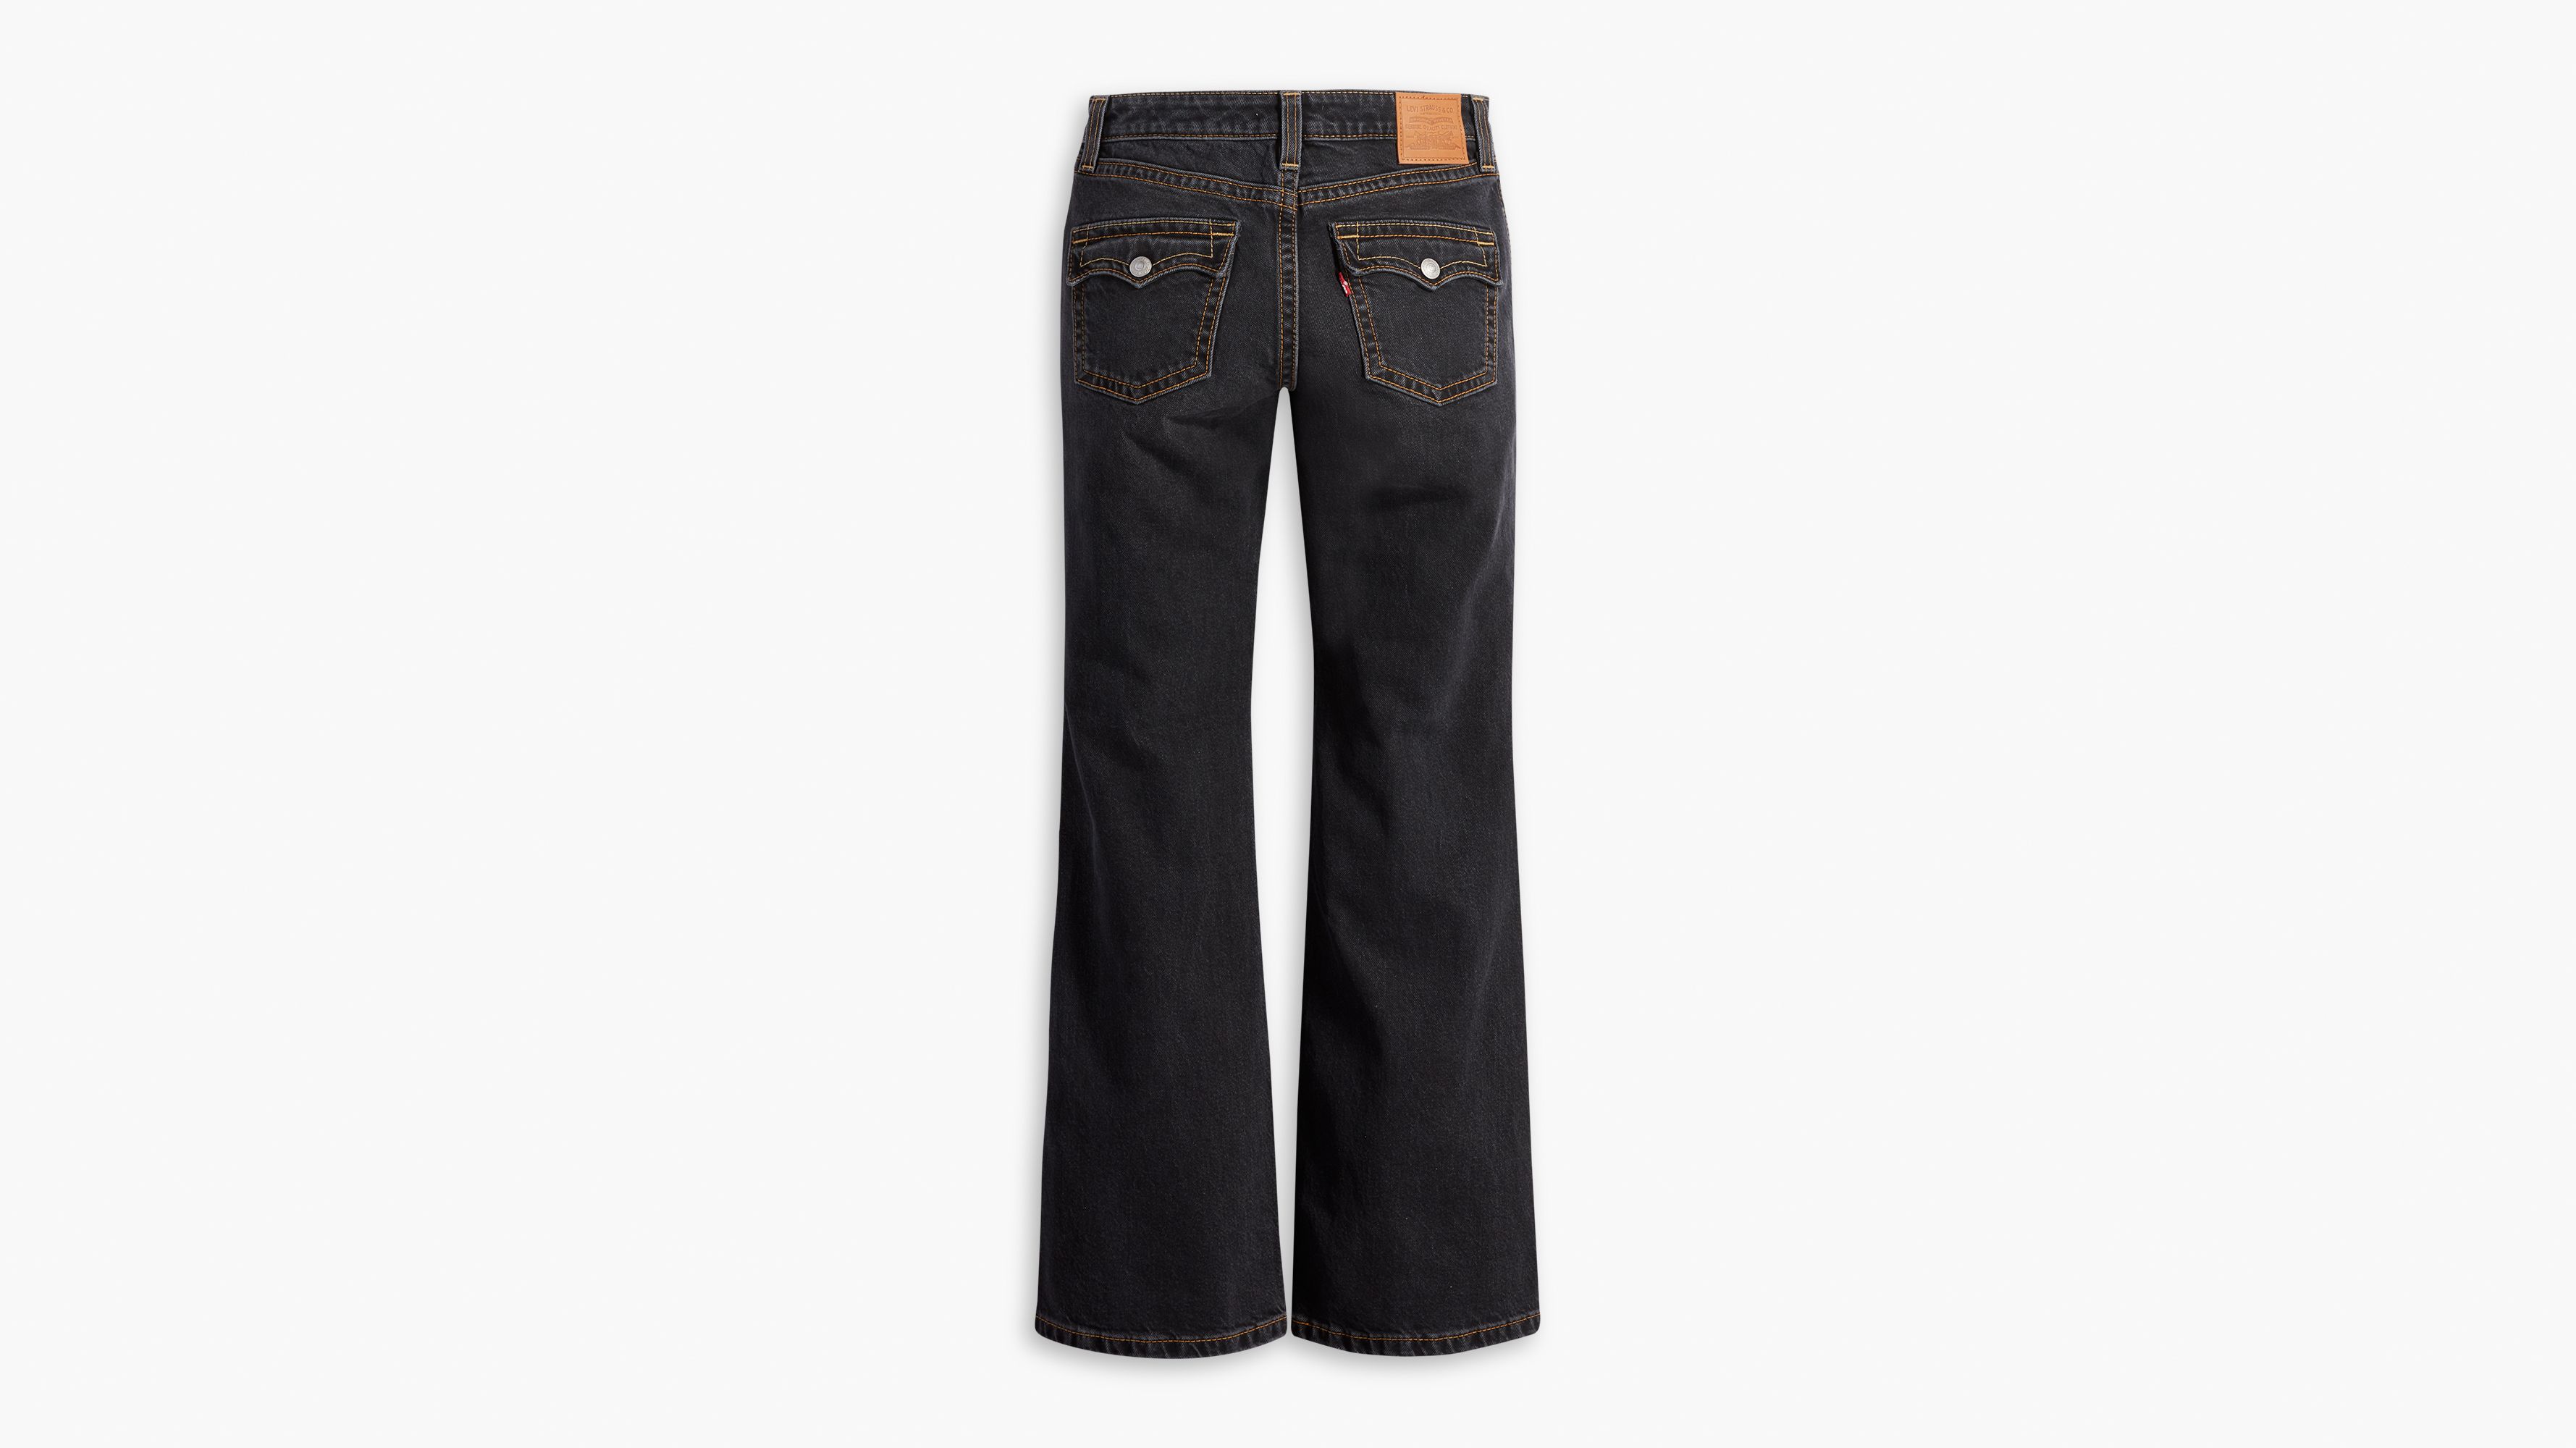 LC Lauren Conrad Bootcut Jeans Women's 4S Black Denim Low Rise 5-Pocket